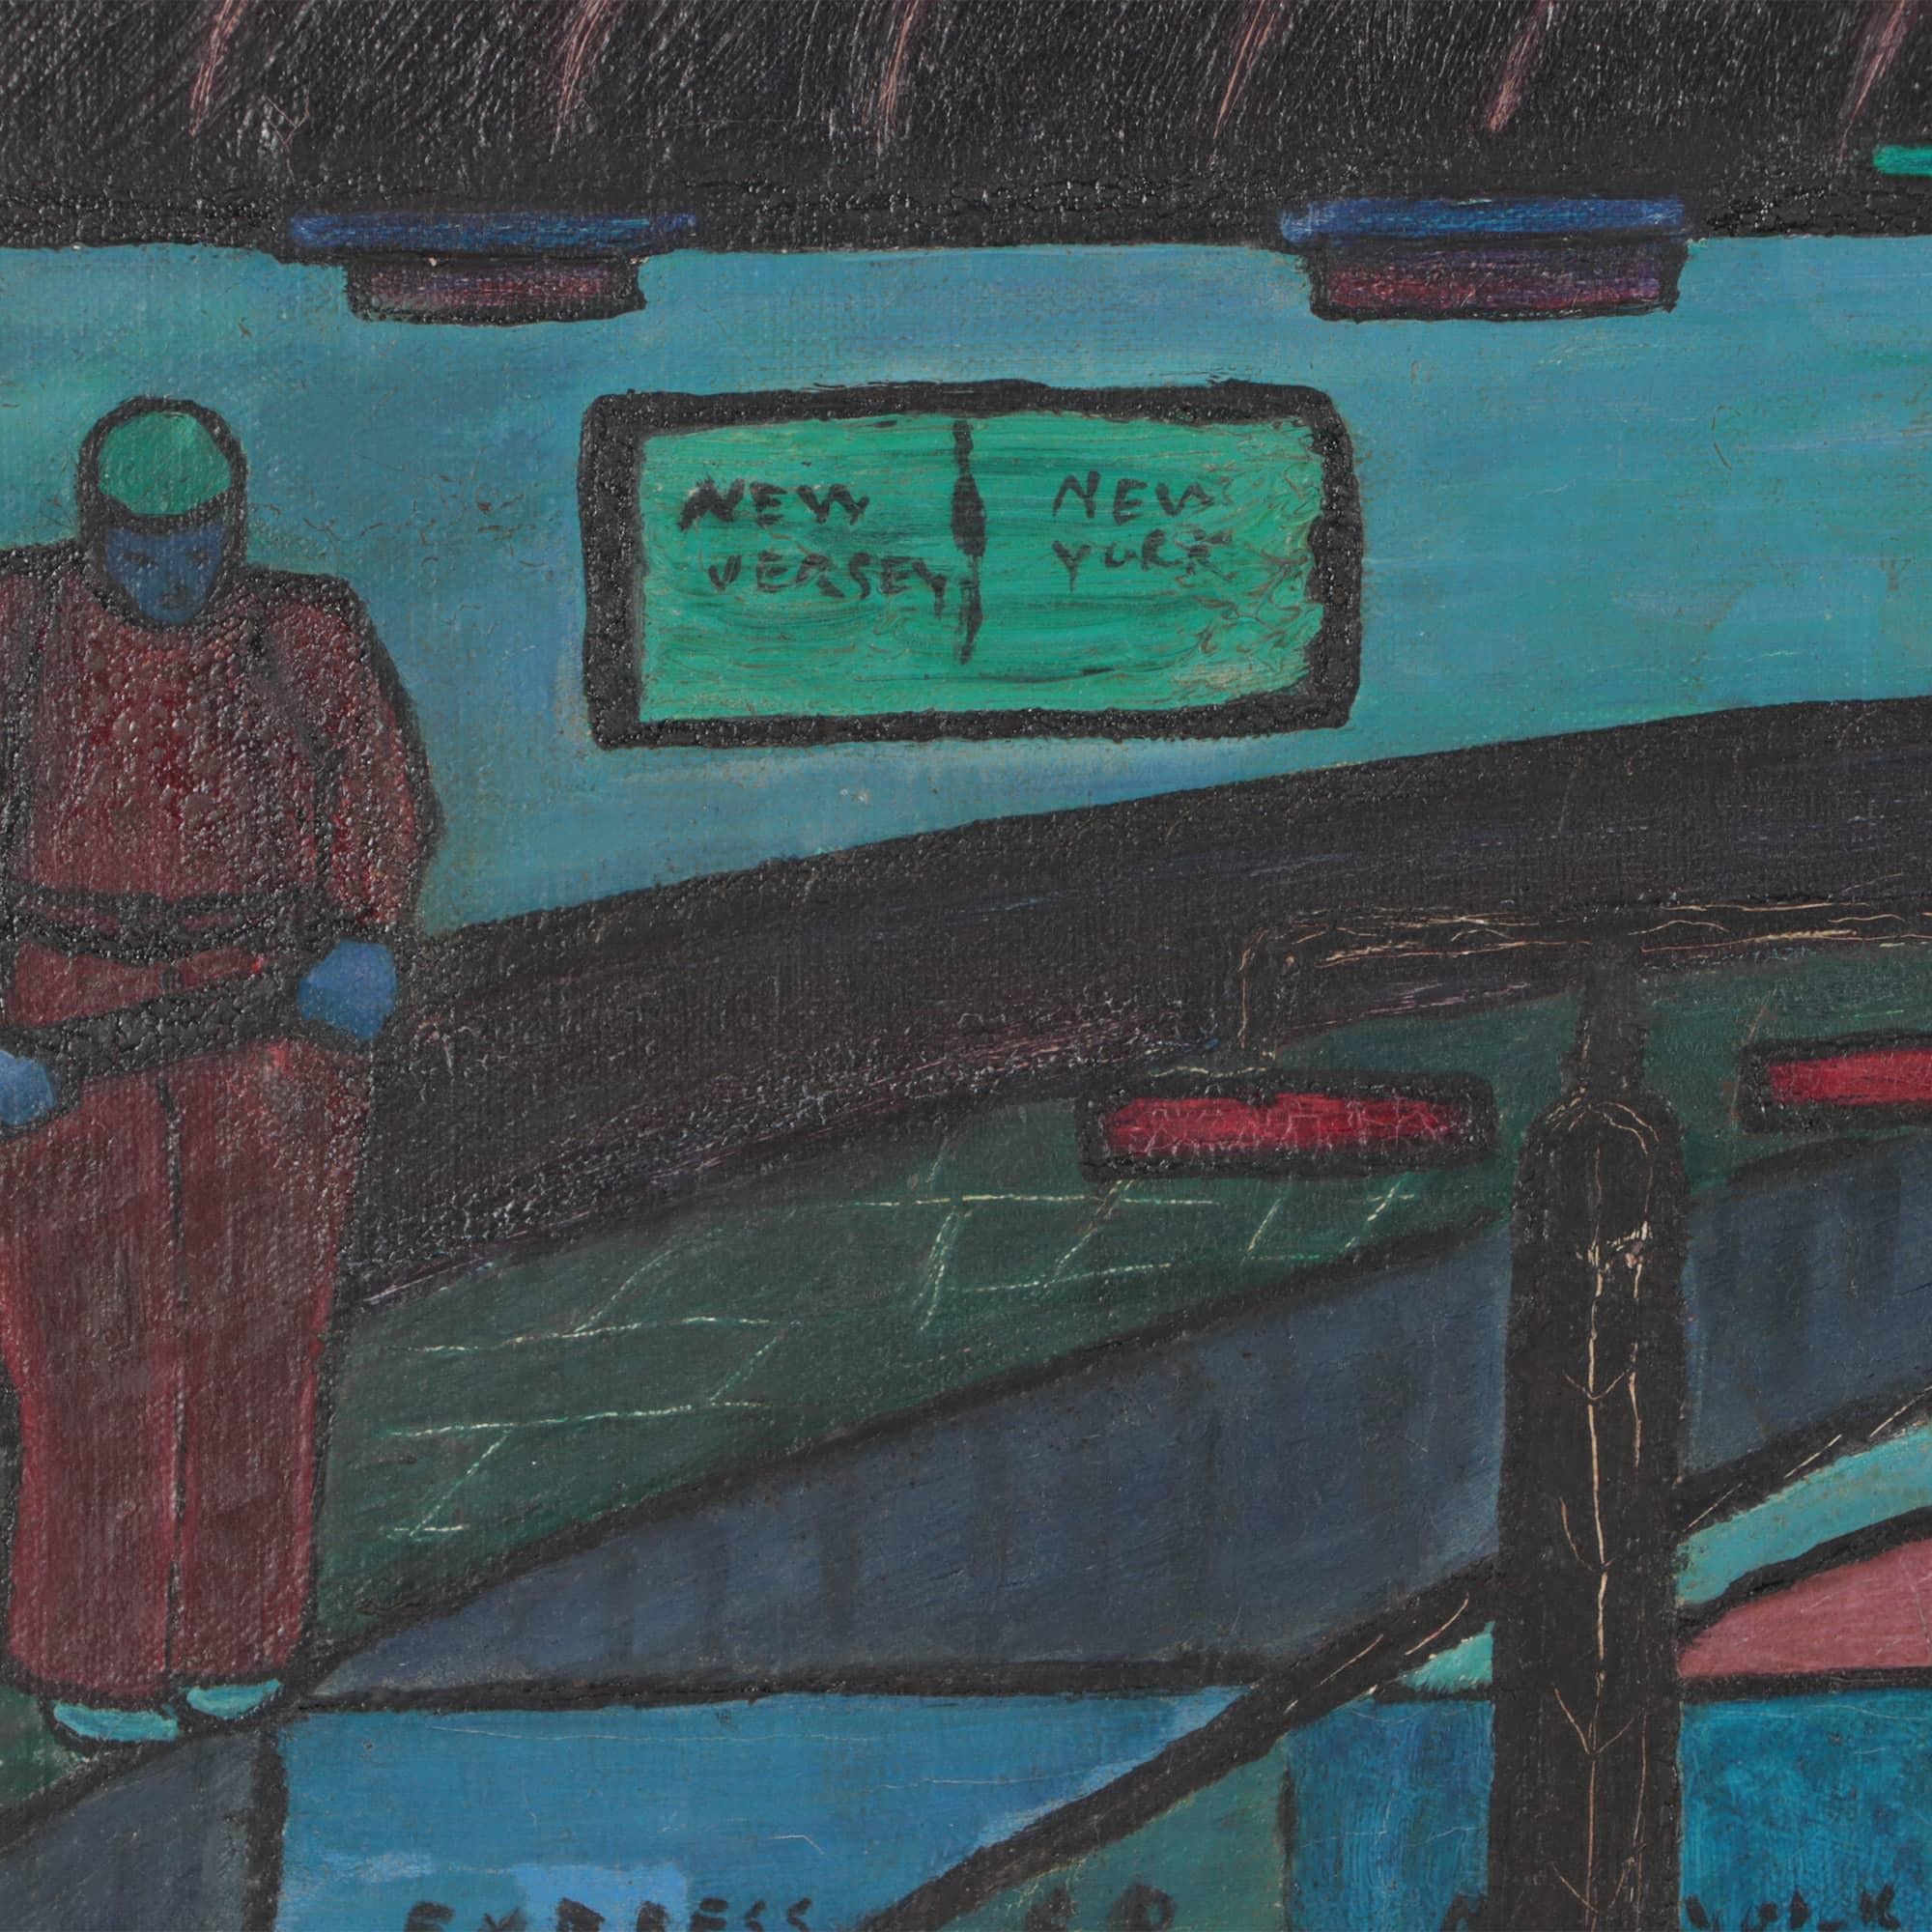 E.B. Savage, New Jersey / New York city street scene, peinture à l'huile sur toile signée et datée 1953. Logée dans un joli cadre mouluré à gorge.
Image : 17.75 